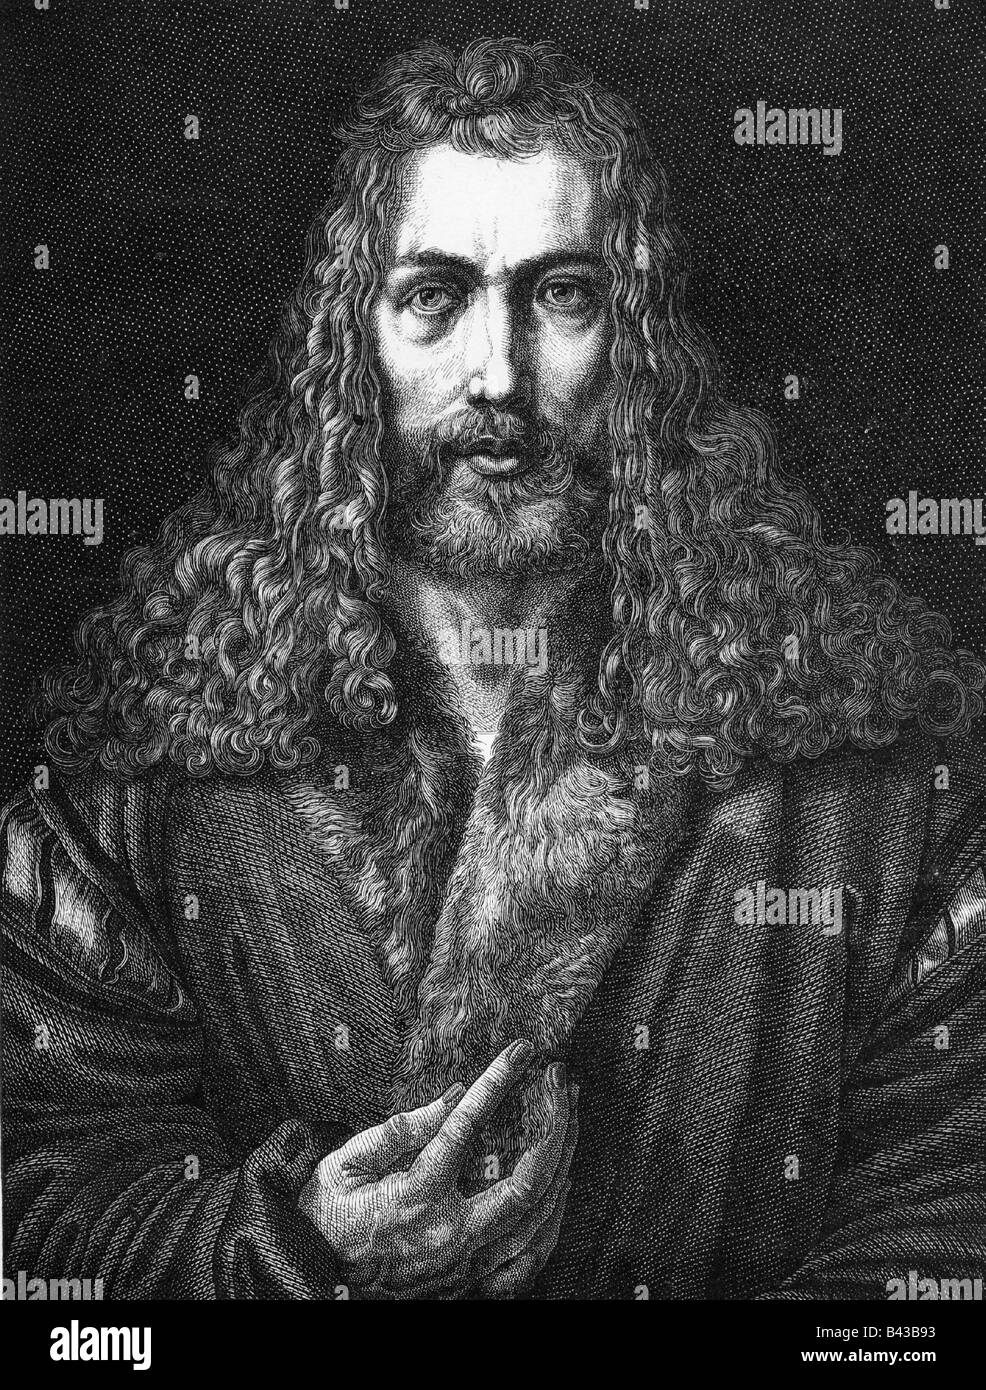 Dürer, Albrecht, 21.5.1471 - 6.4.1528, tedesco pittore e incisore, autoritratto, incisione su legno da F. W. Bader, sulla base di un disegno da Josef Schoenbrunner, artista del diritto d'autore non deve essere cancellata Foto Stock